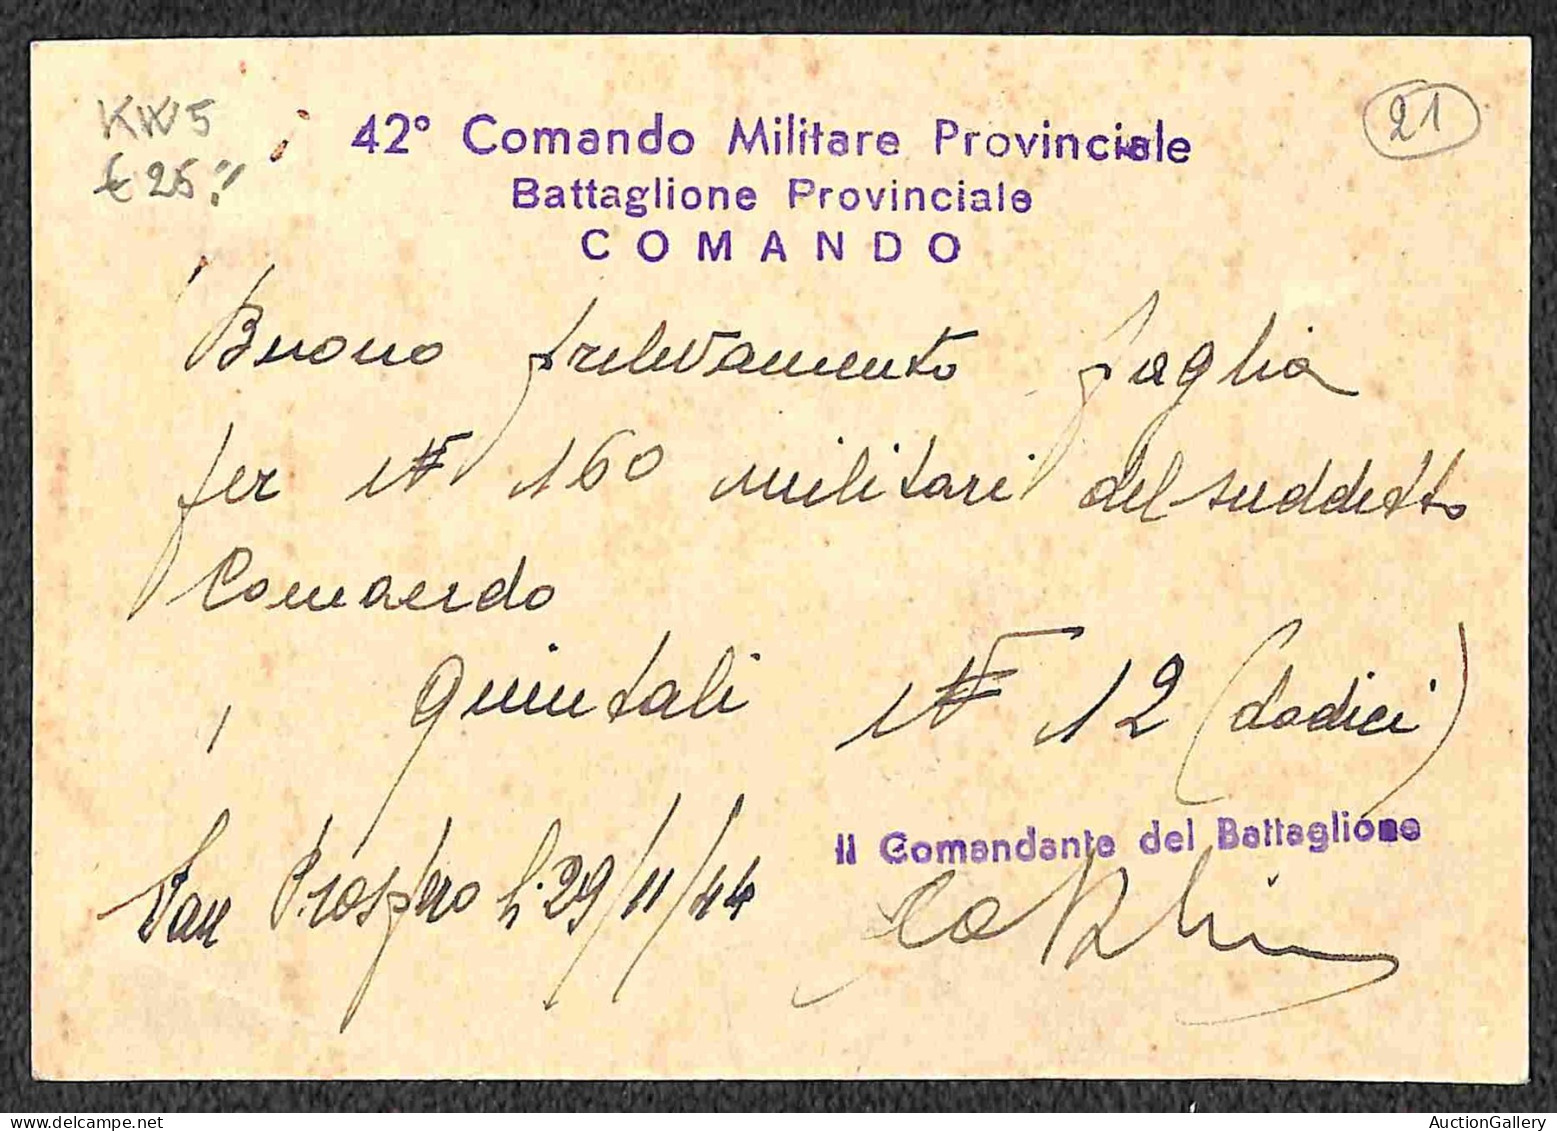 RSI - Cartoline - Insieme di 6 cartoline postali in franchigia da aprile a dicembre del 1944 per località italiane - mol